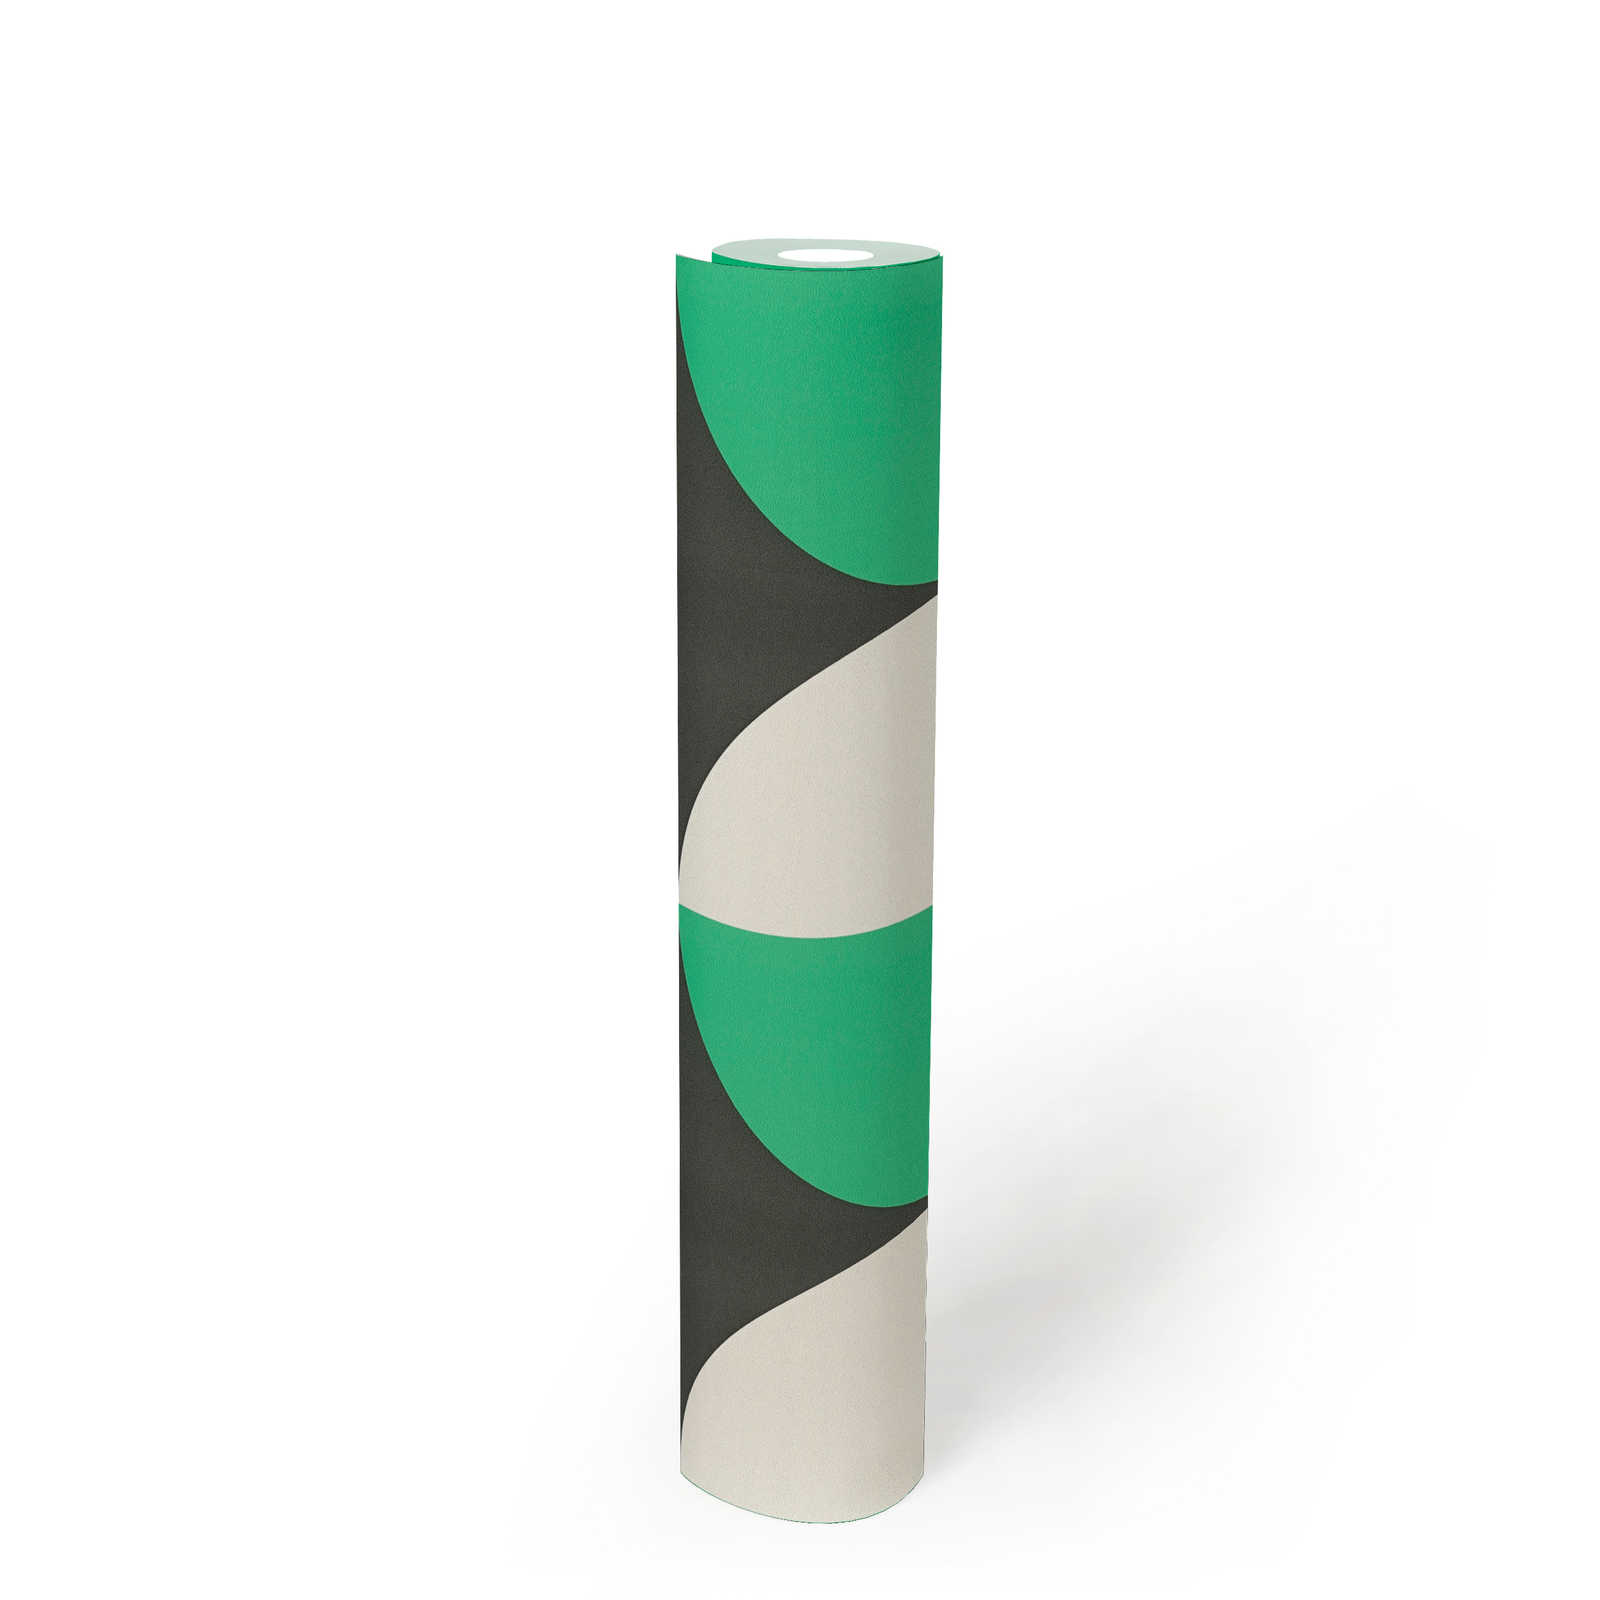             Kreismuster Vliestapete im Retro 70er Jahre Stil – Grün, Weiß, Schwarz
        